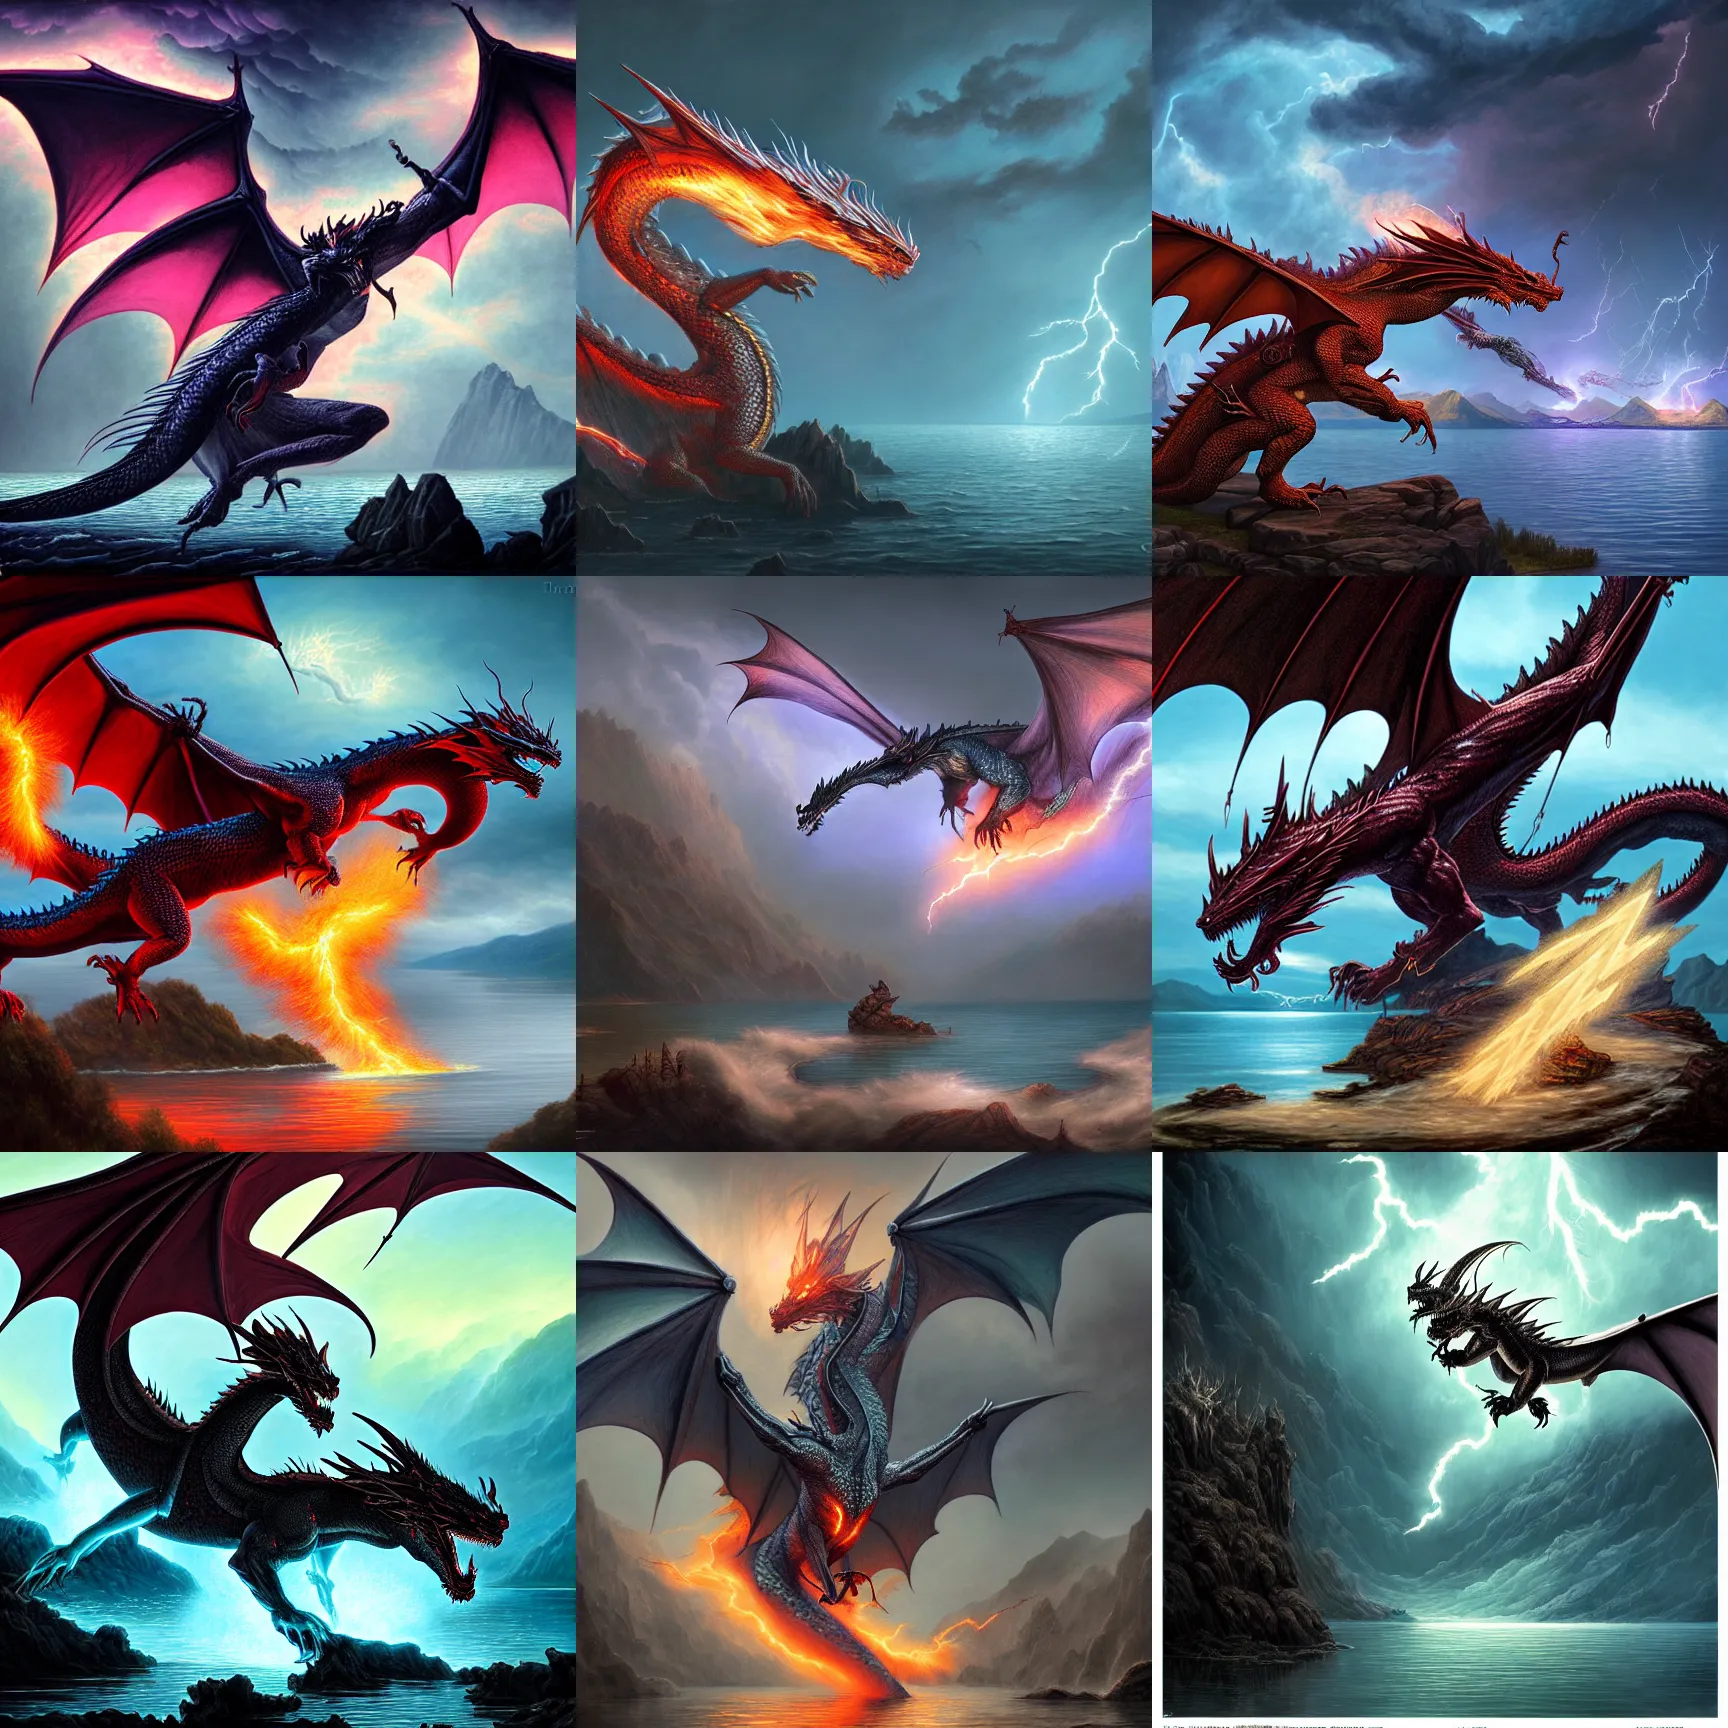 Prompt: dragon ghost, lightning, lake background, gerald brom, hyper detailed, 8 k, fantasy, dark, grim